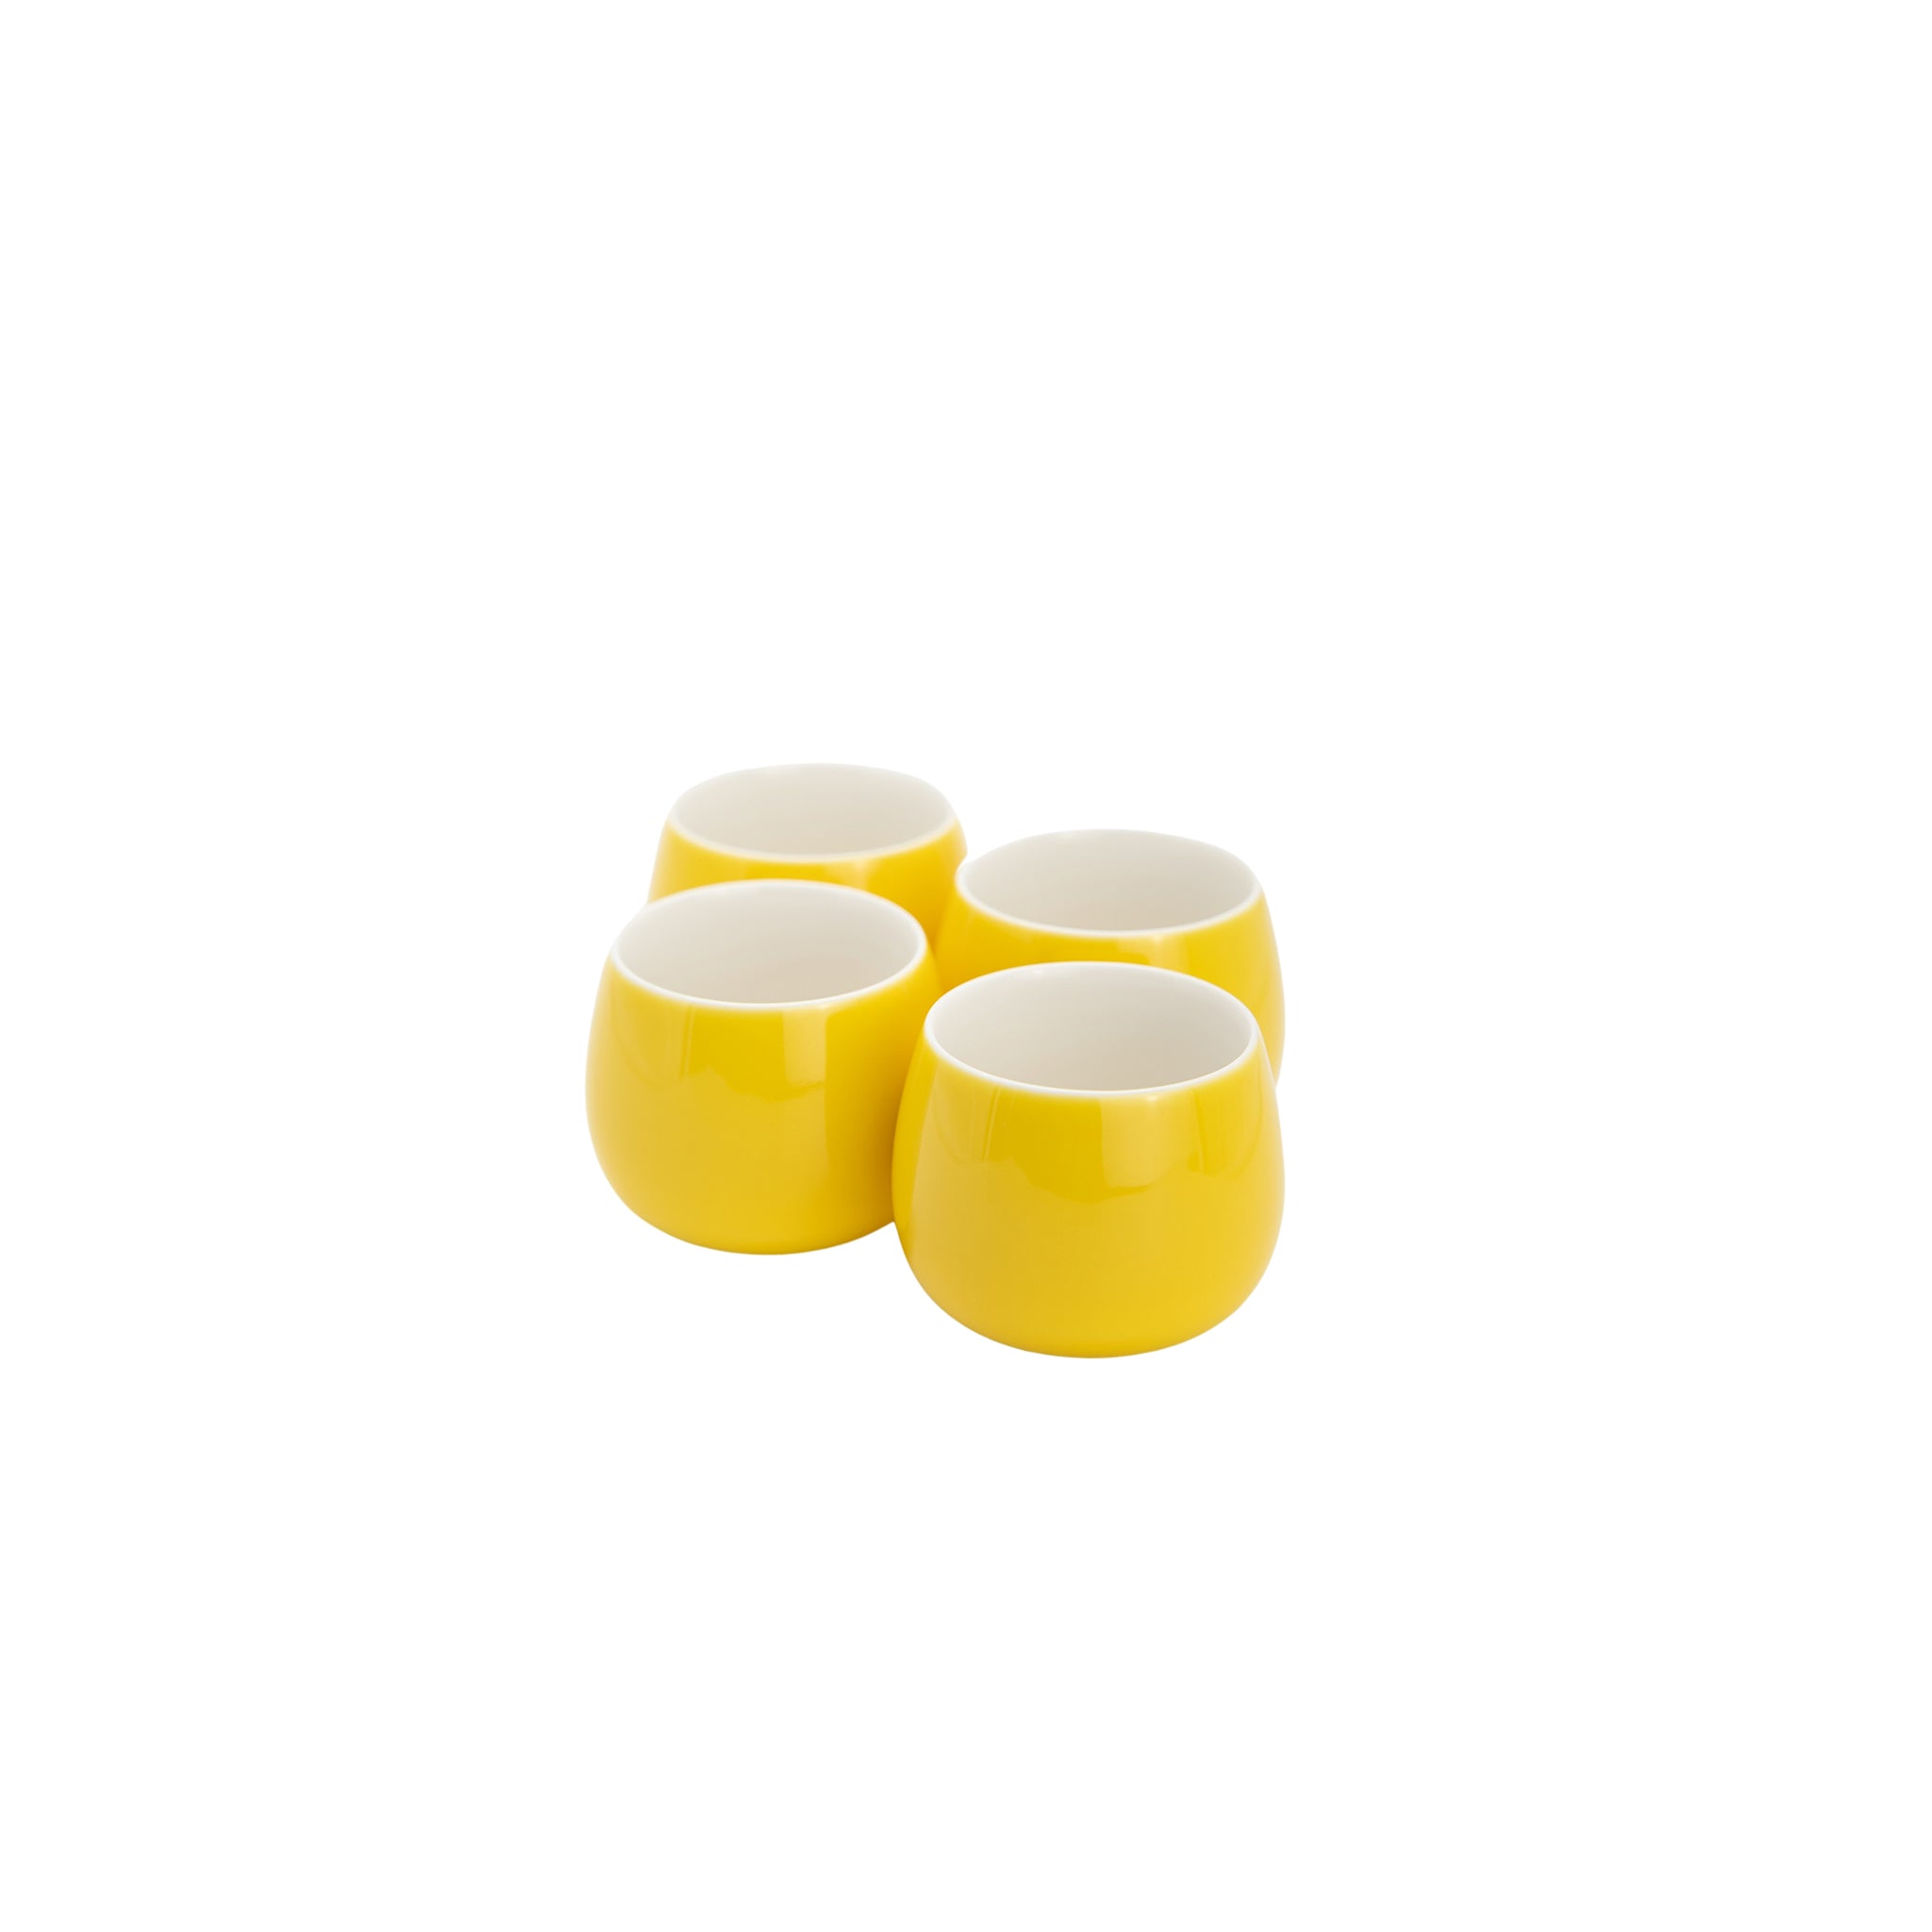 Tea Pot Set (Yellow) with Organic Jasmine Extra Special Green Tea